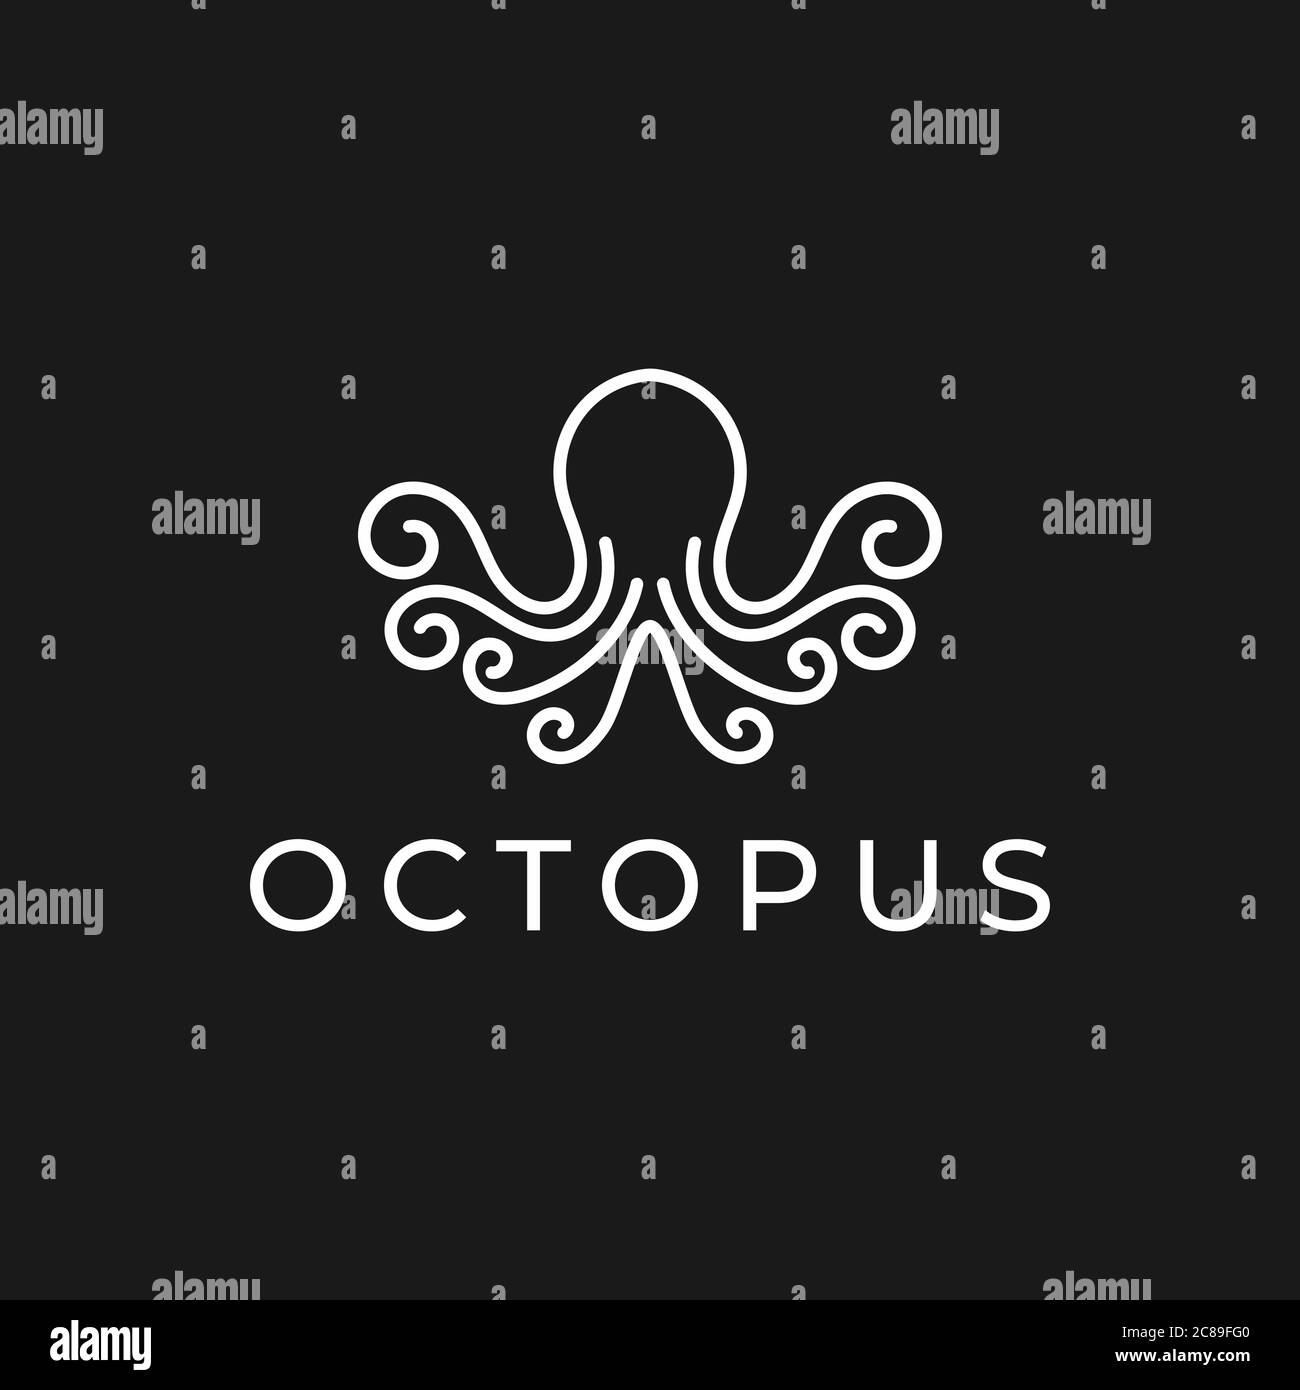 Modello di design con logo Octopus con stile line art. Illustrazione vettoriale dell'icona del polpo creativo Illustrazione Vettoriale